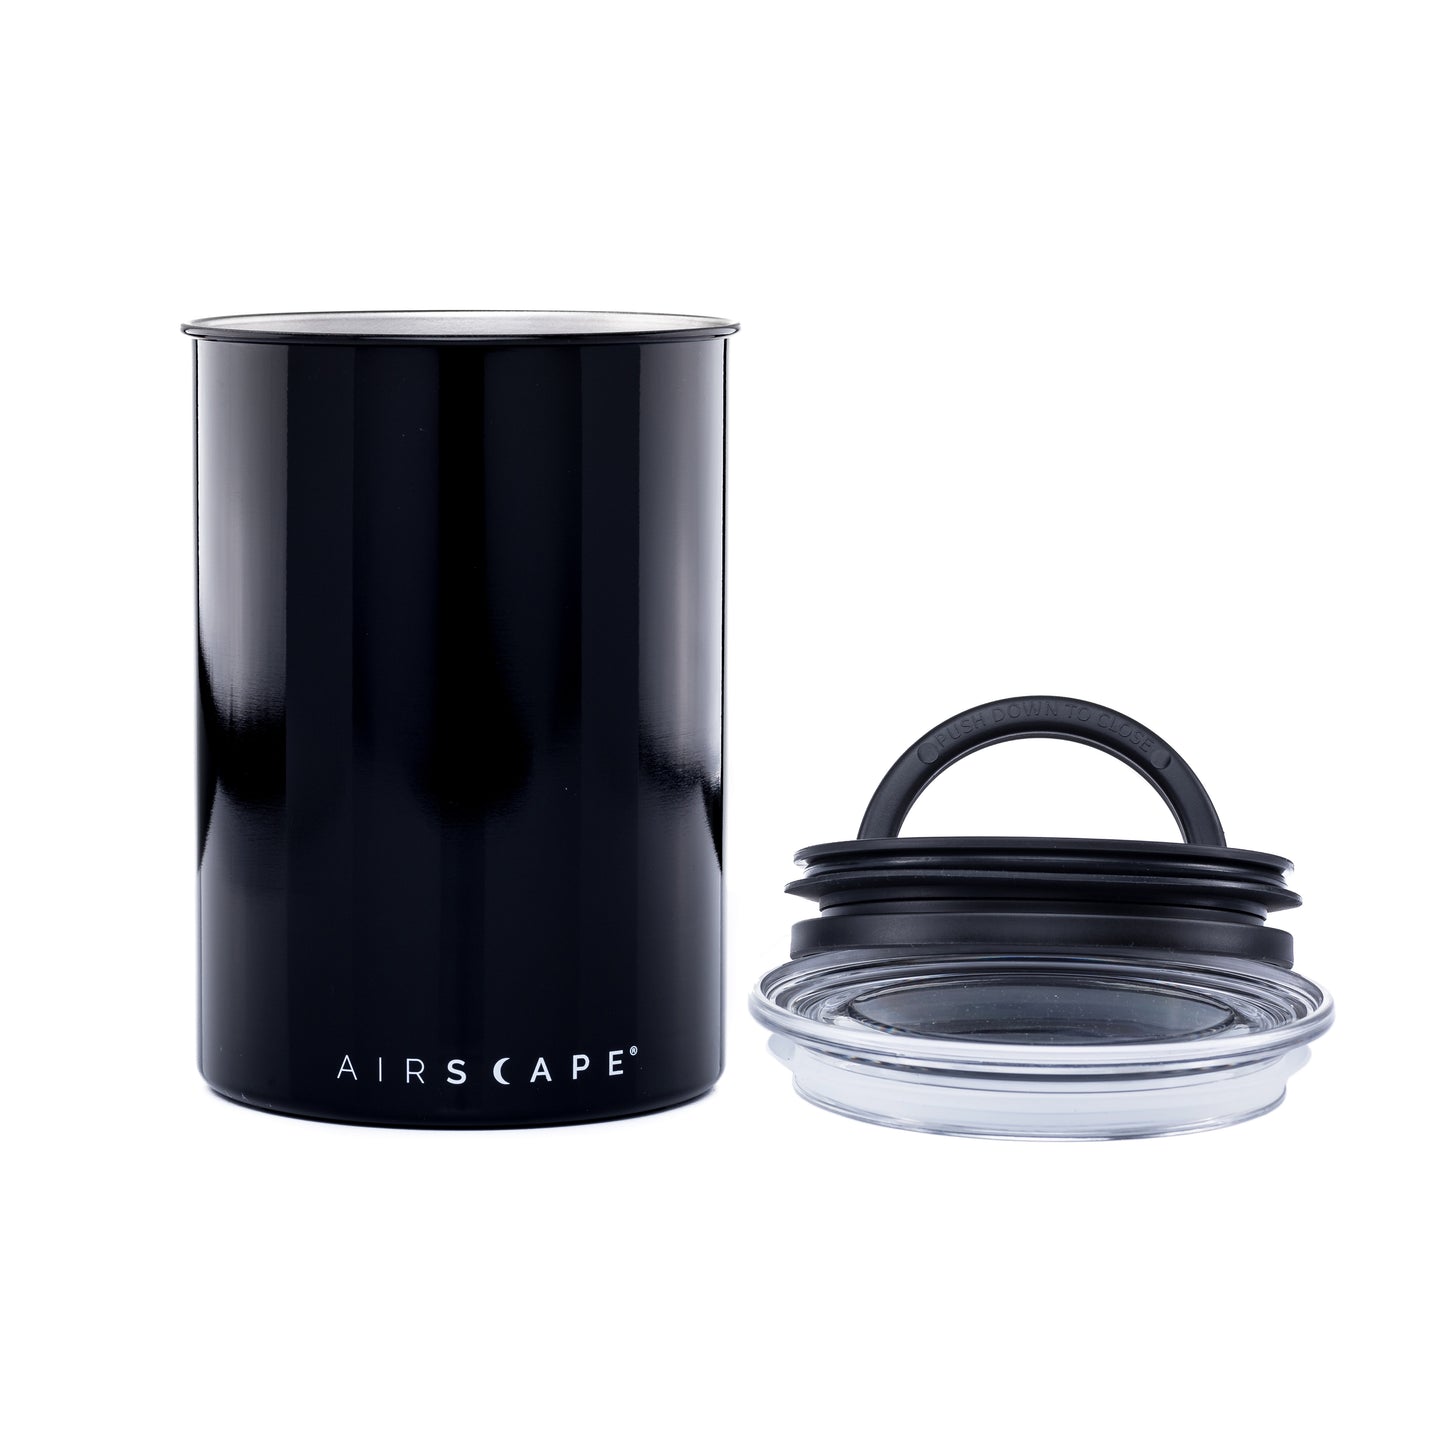 Airscape Kaffeedose für 500g Kaffee, schwarz glänzend, Edelstahl